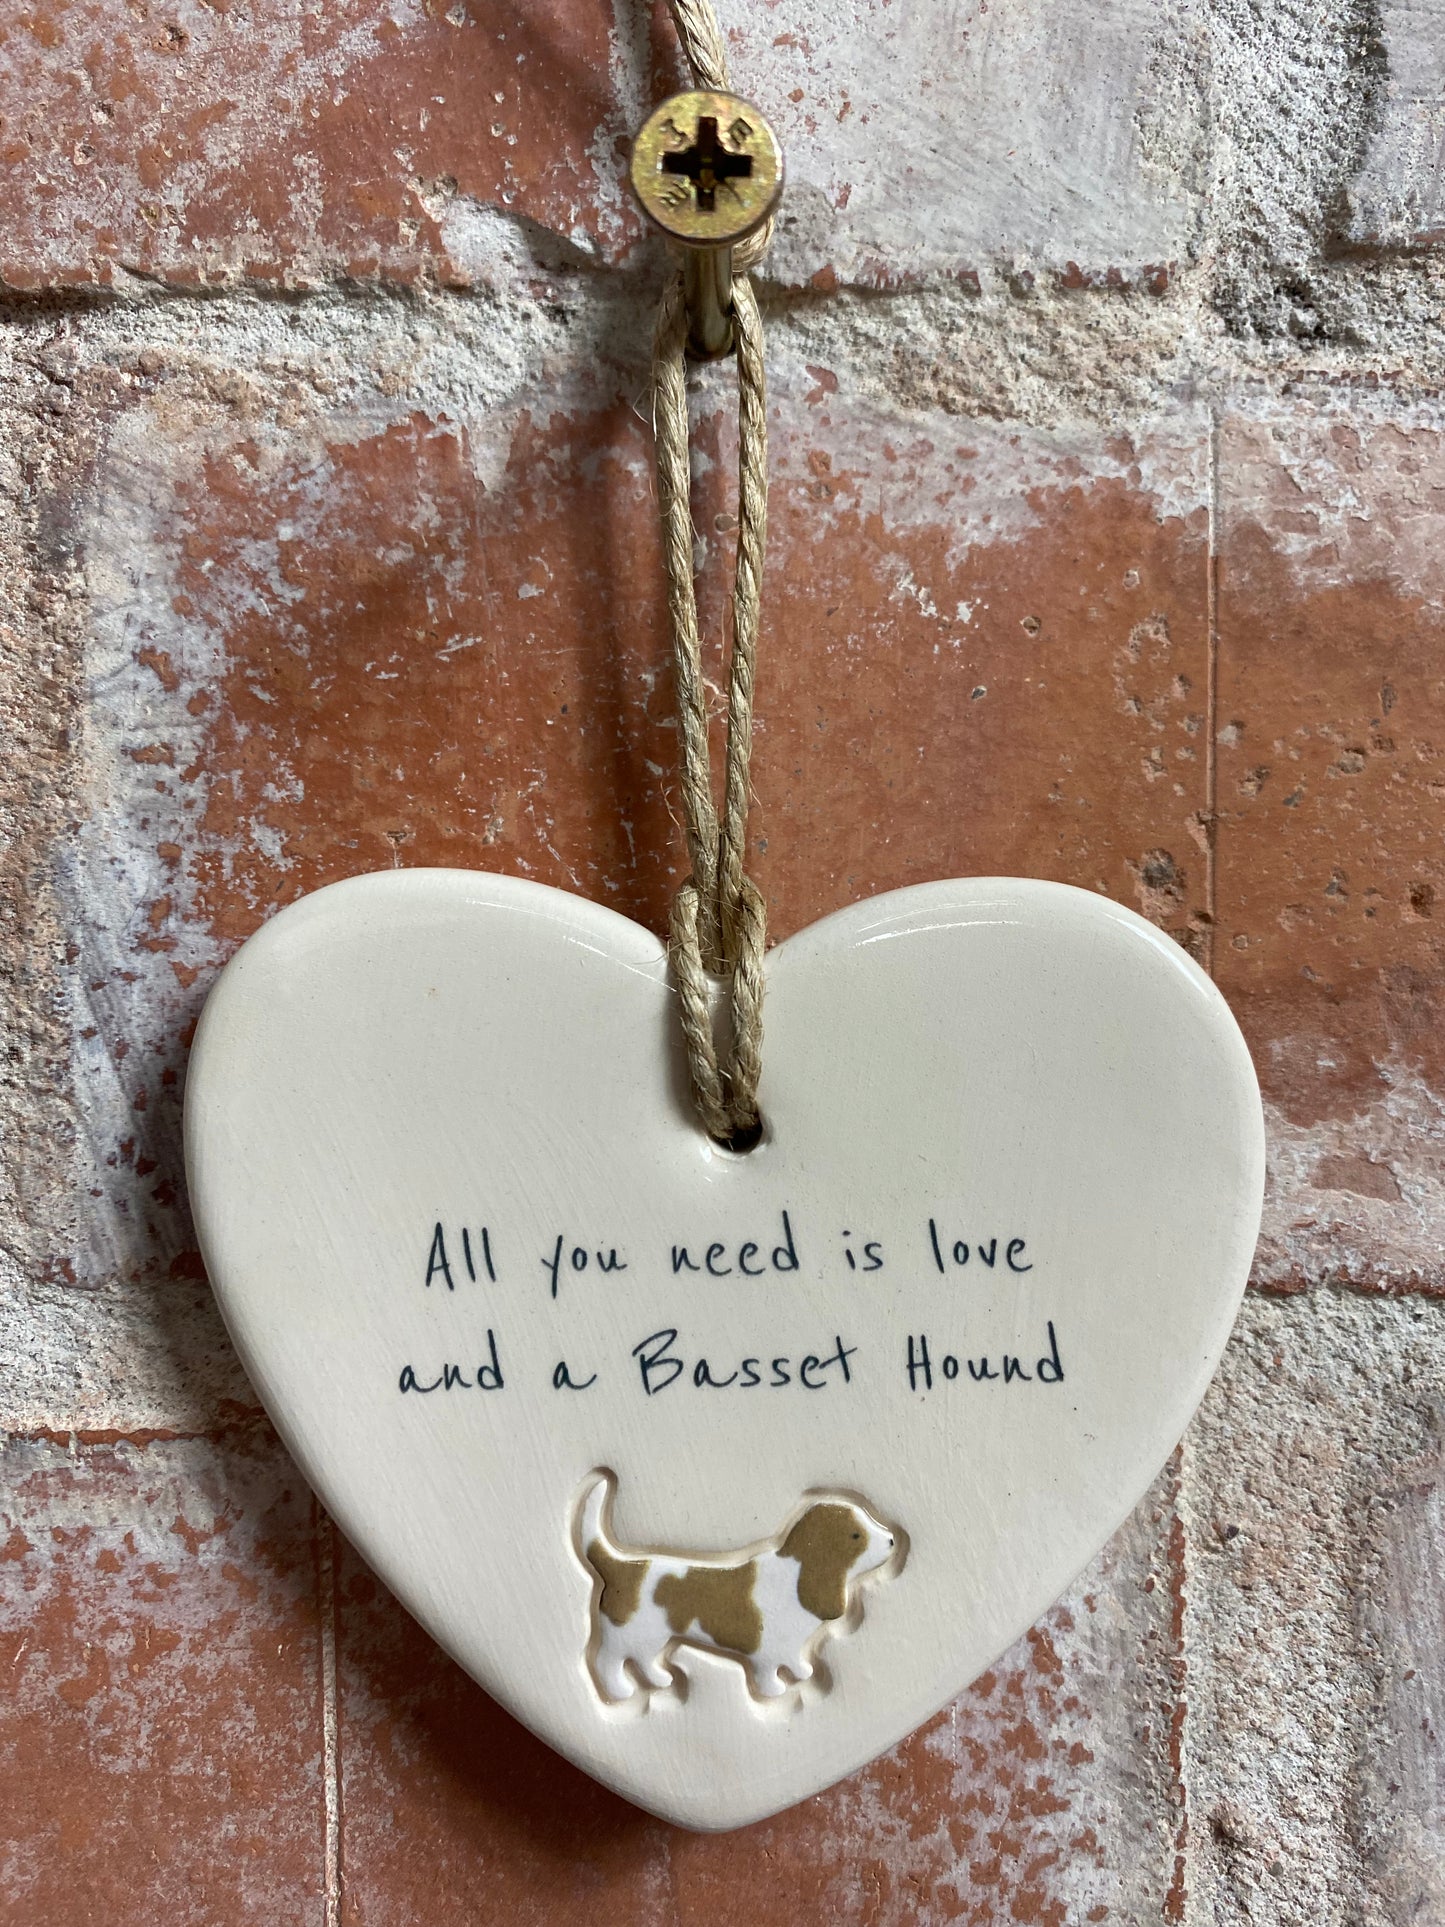 Basset Hound ceramic heart